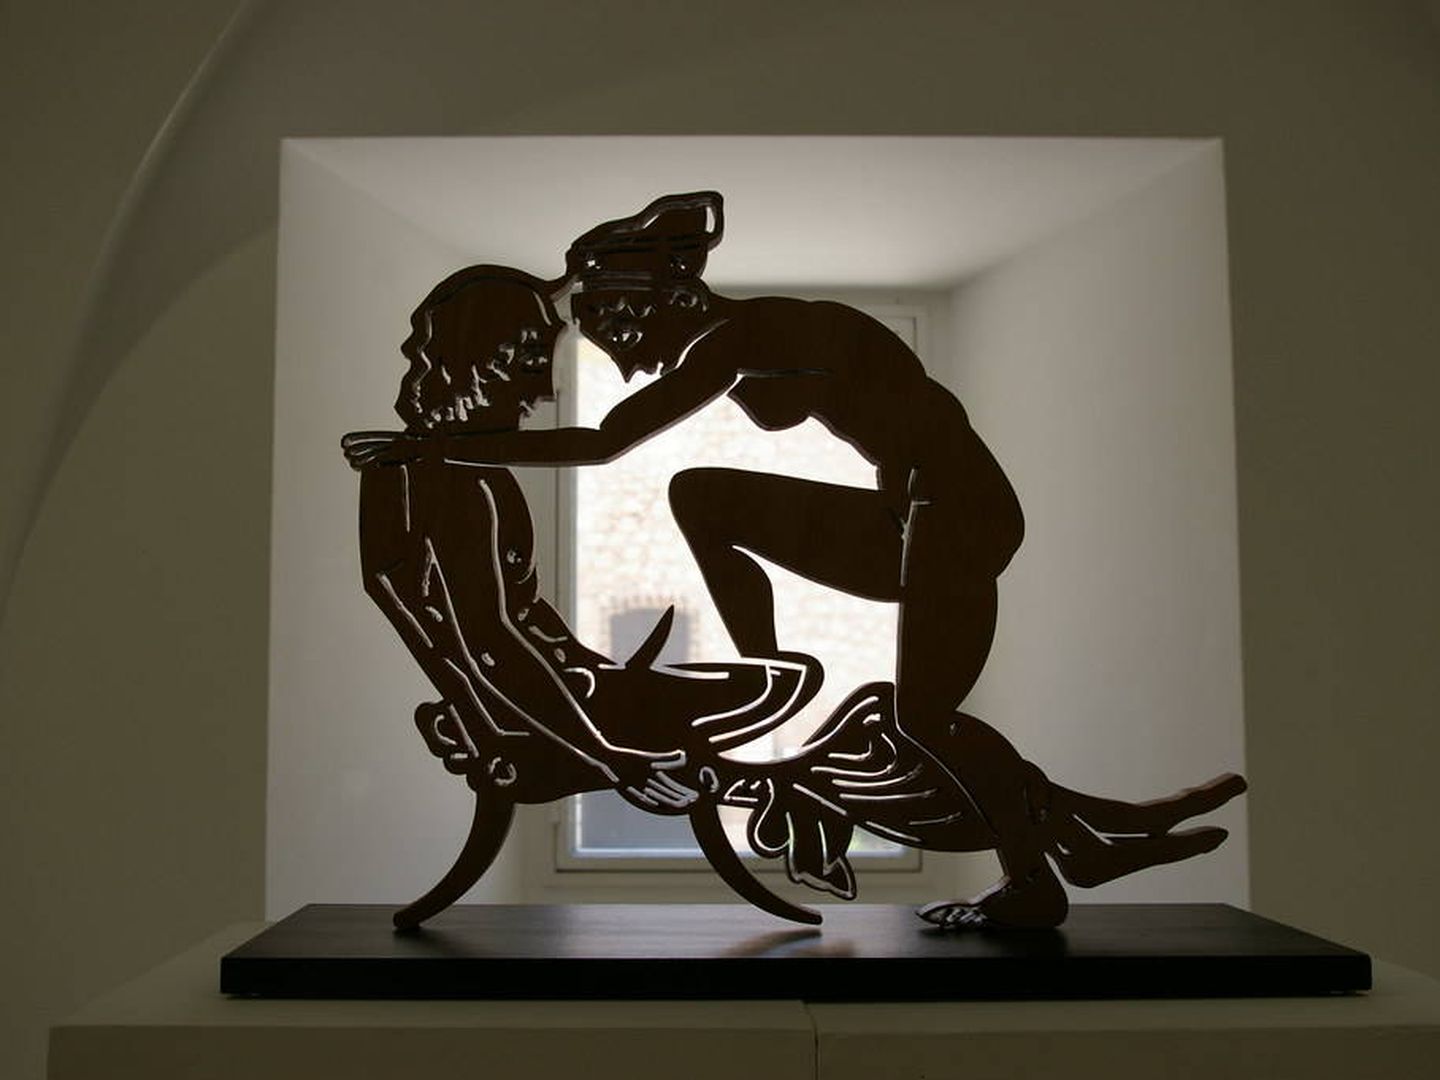 Escultura de la colección 'Suite erótica' de Antoni Miró en Valencia. (Flickr: santi)